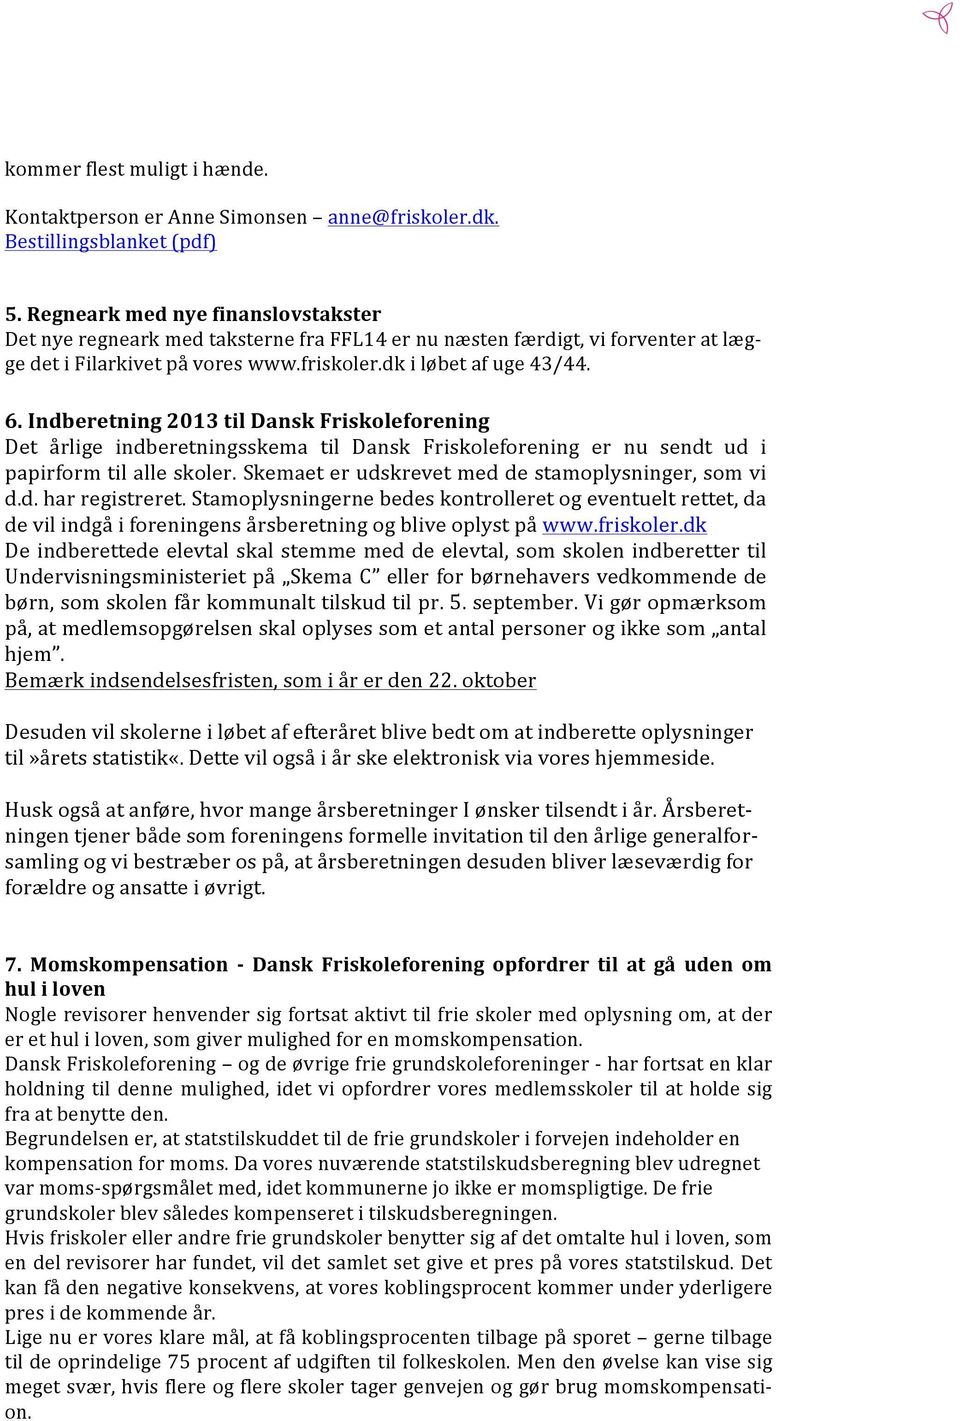 Indberetning 2013 til Dansk Friskoleforening Det årlige indberetningsskema til Dansk Friskoleforening er nu sendt ud i papirform til alle skoler. Skemaet er udskrevet med de stamoplysninger, som vi d.